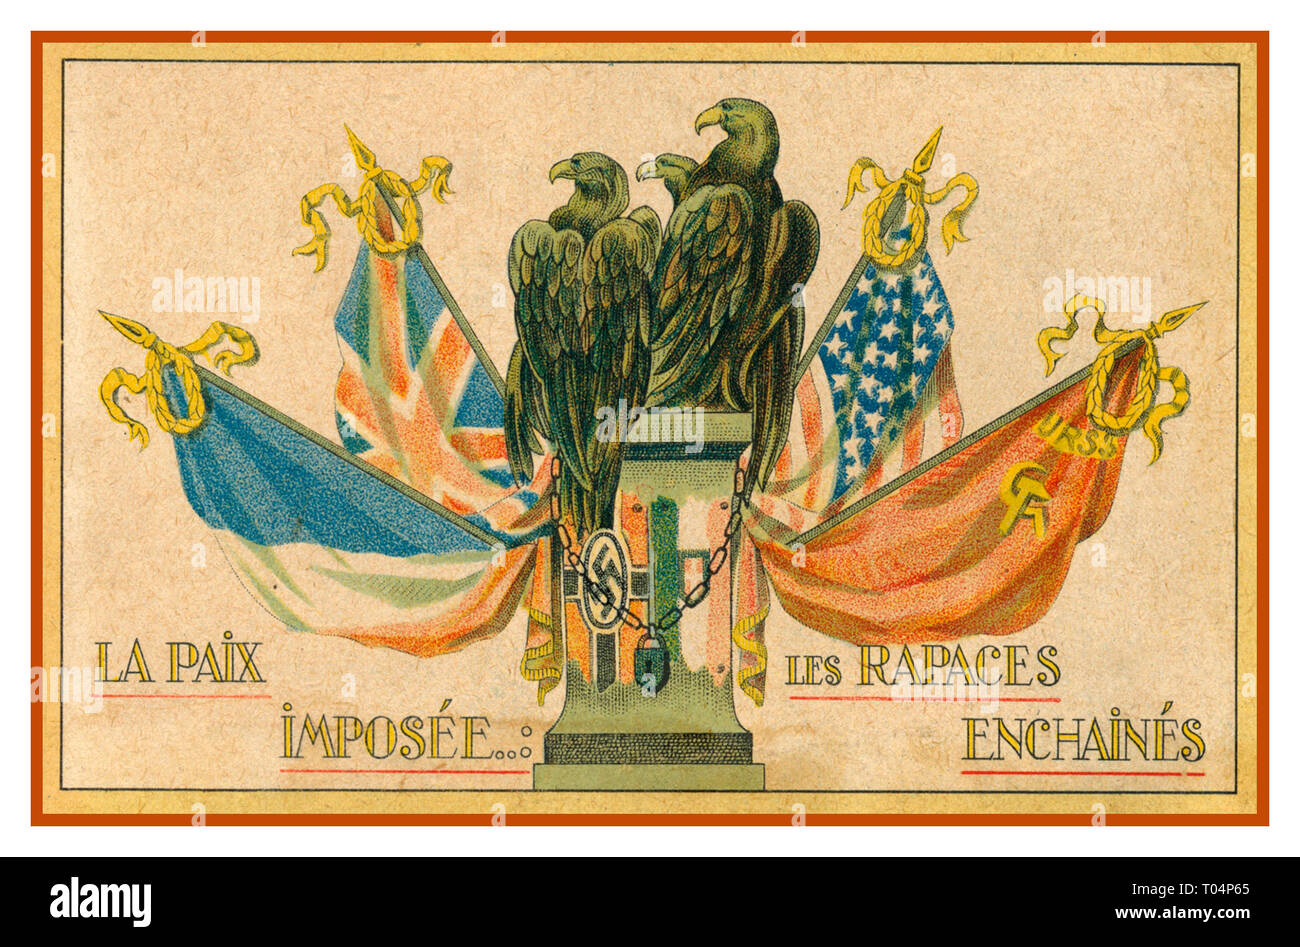 Die WW2 1940 vintage Französische Propaganda Postkarte Untertitel: "Der Frieden, die Raptors verkettet mit Nazi-deutschland hawk wie Greifvögel & Hakenkreuz Symbol, gefesselt durch die Alliierten mit Flaggen von Frankreich, Großbritannien, USA und Sowjetunion Stockfoto